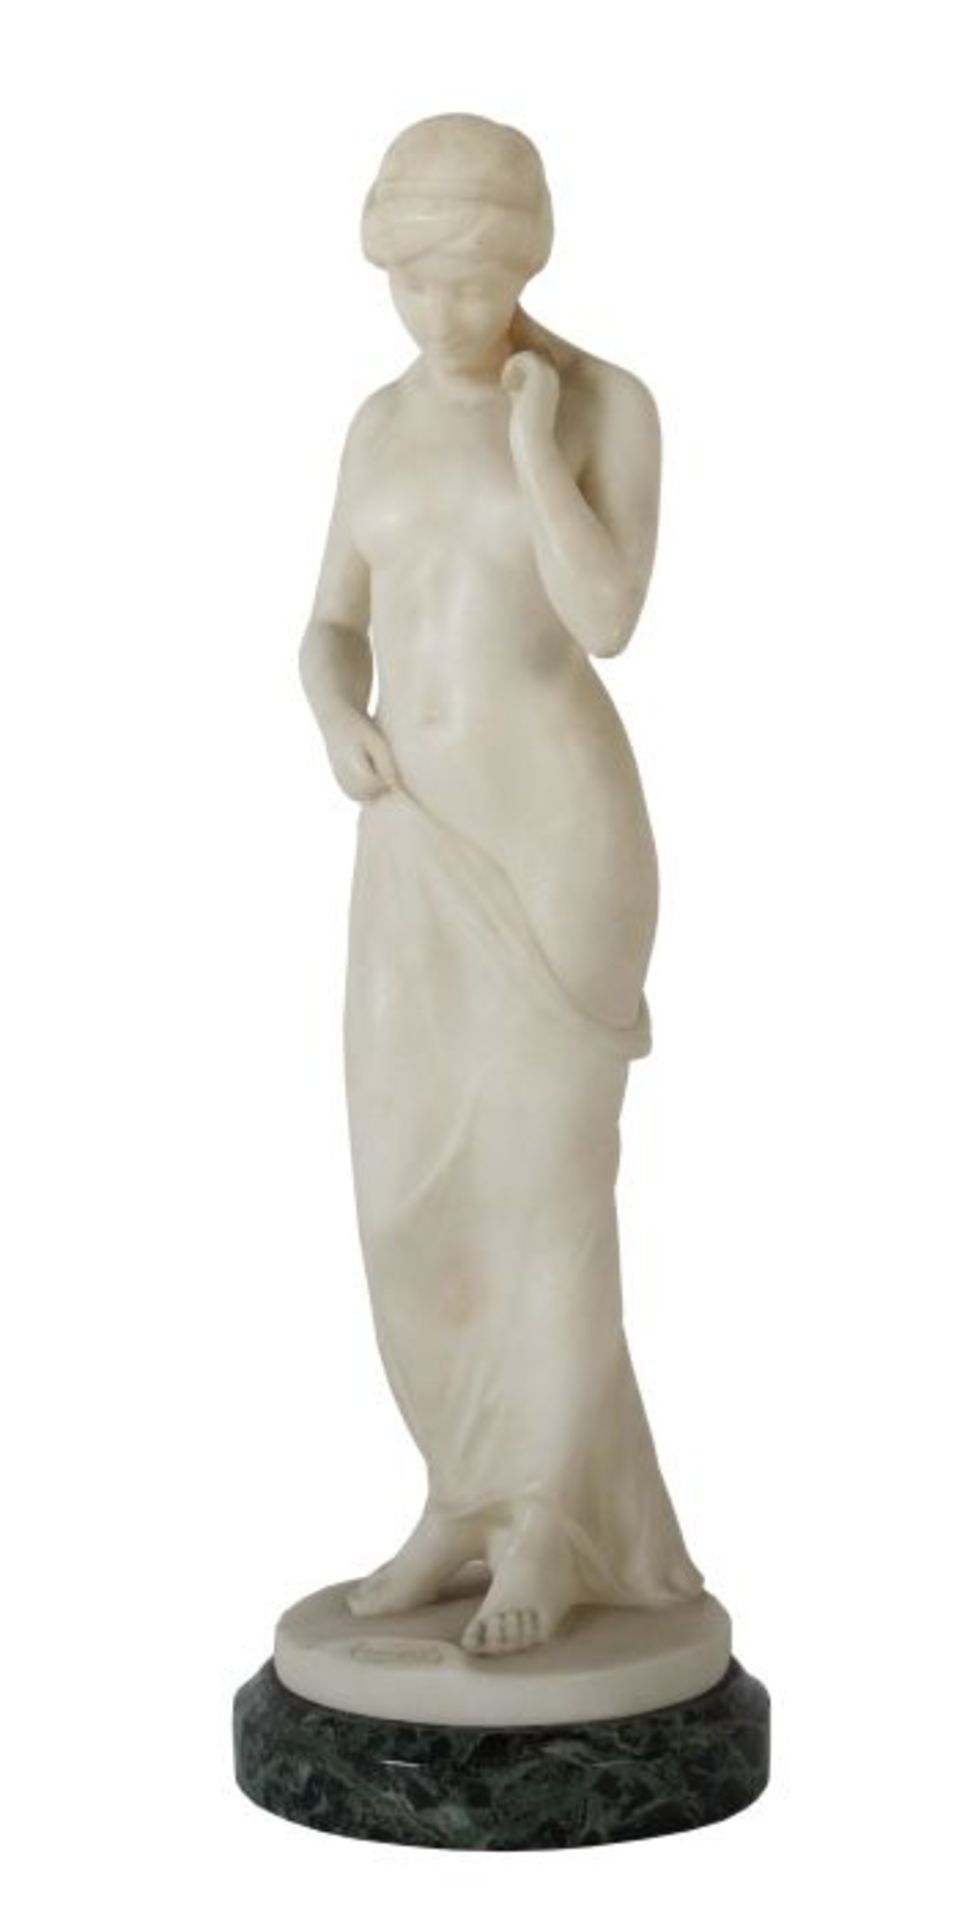 Bildhauer des 19./20. Jh. "Nach dem Bade", Alabaster, vollplastische Figur eines stehenden